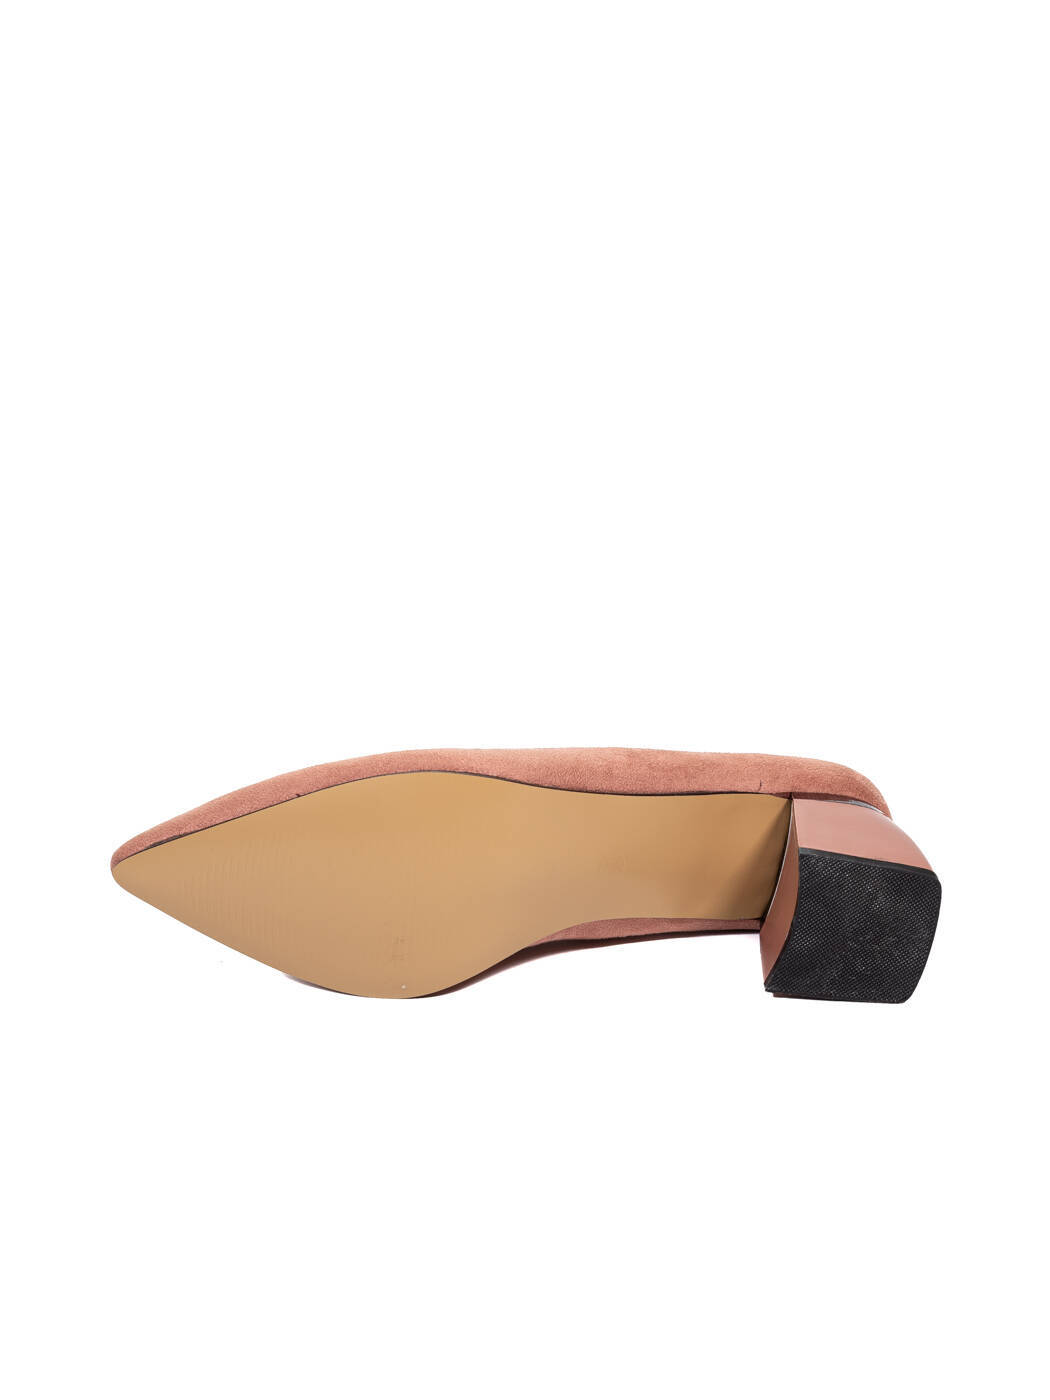 Туфли женские коричневые экозамша каблук устойчивый демисезон от производителя 10M вид 2